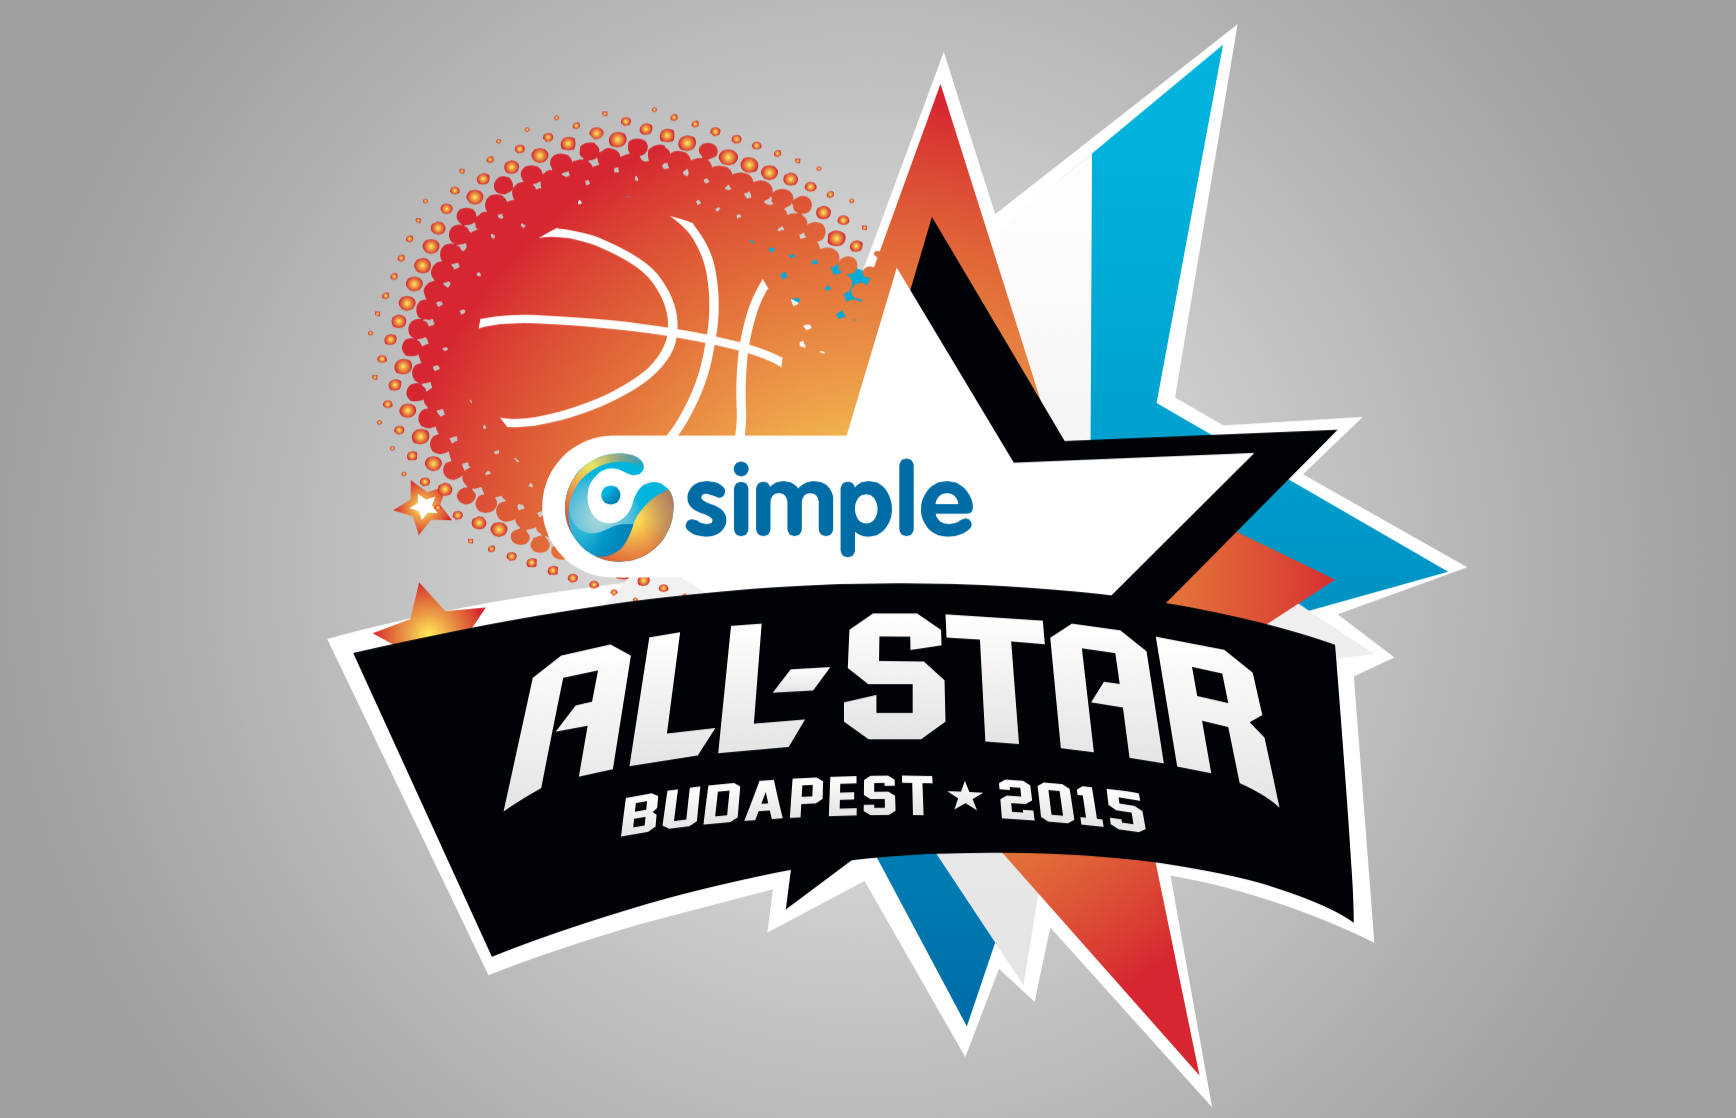 Simple All-Star Gála 2015: Hétfőn délben indul a szavazás